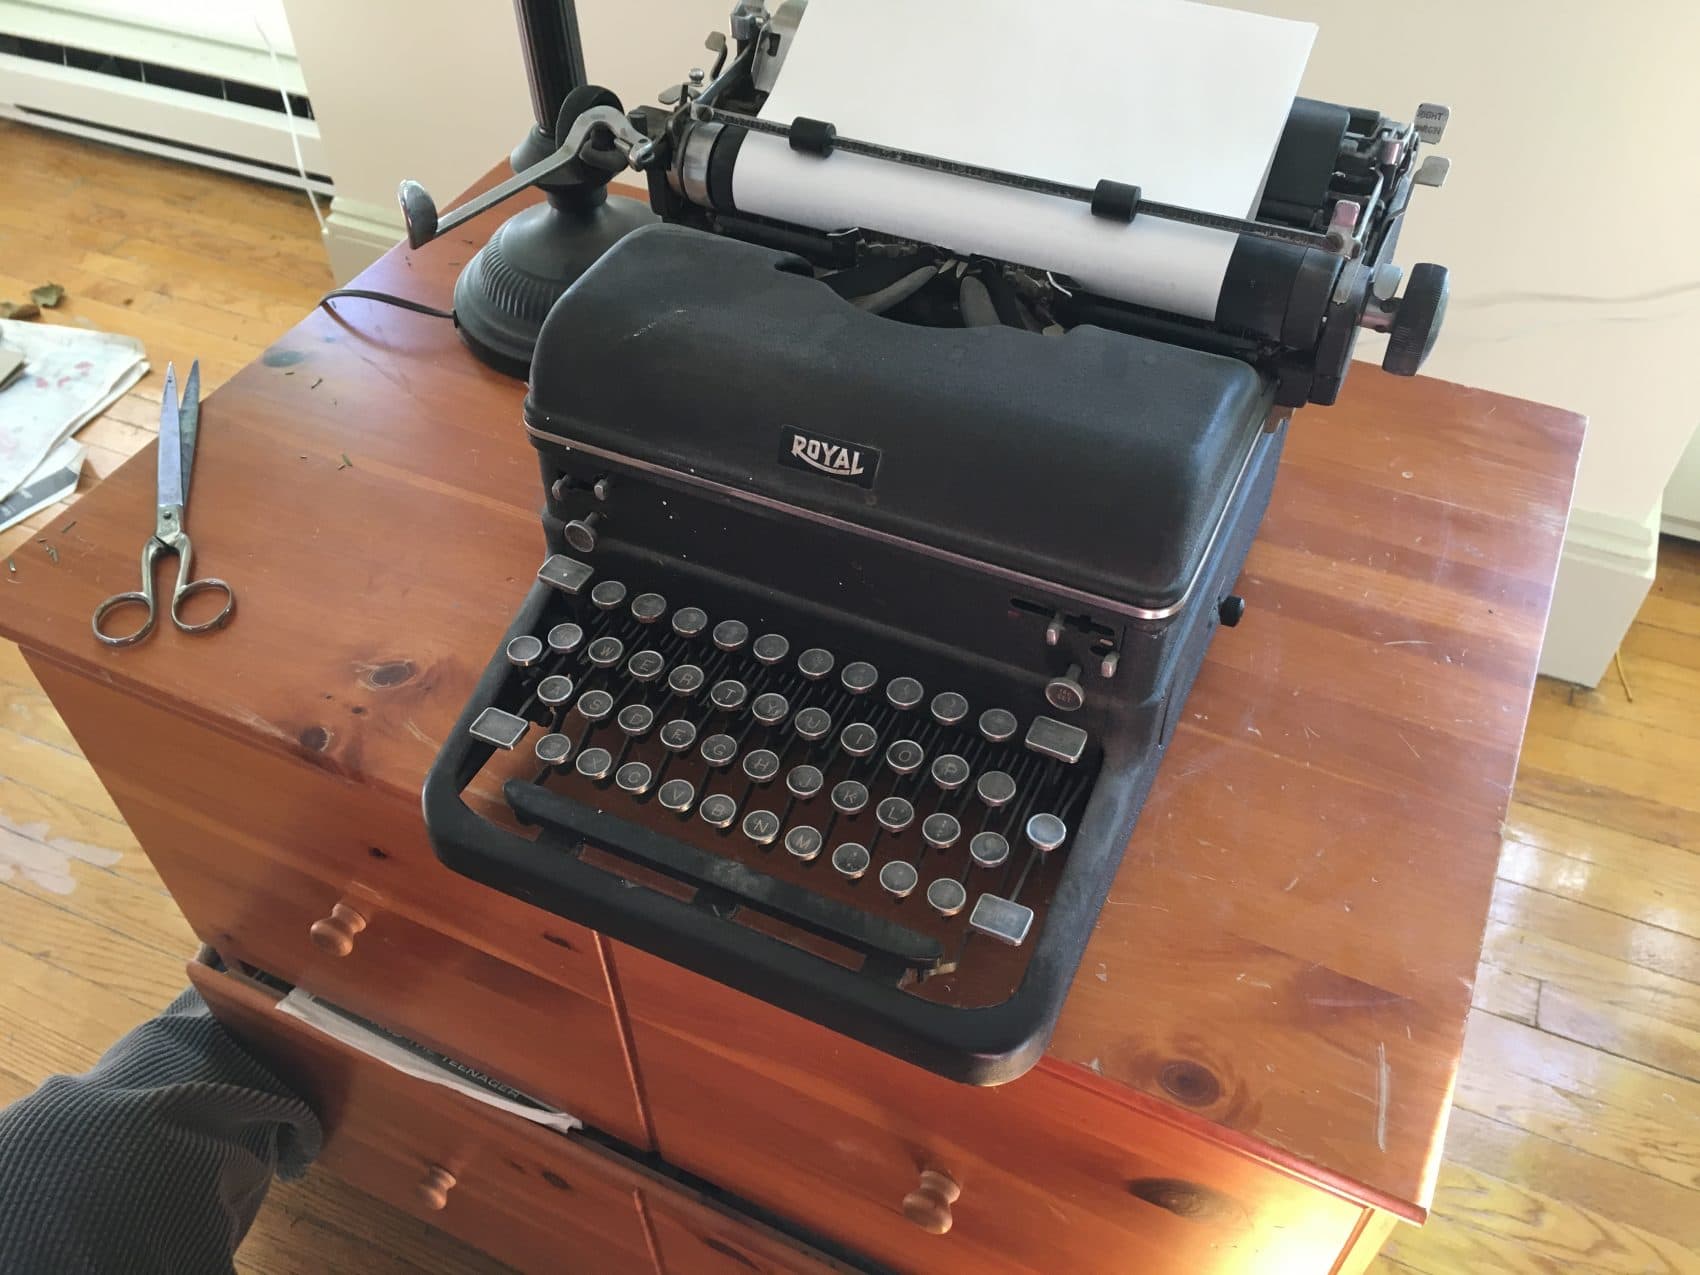 Peter Gelzinis' 1945 Royal typewriter. (David Boeri/WBUR)